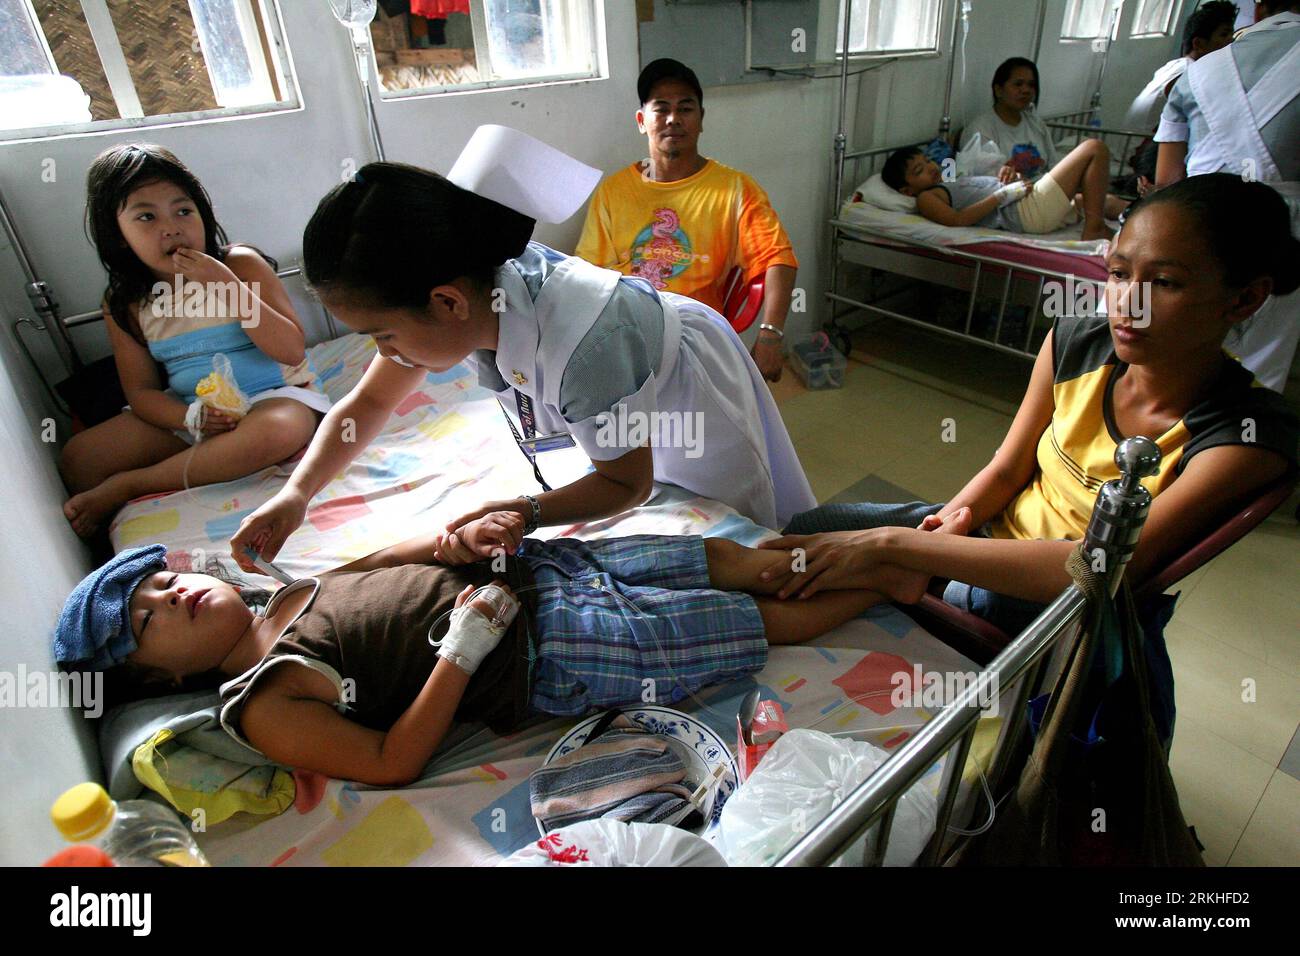 Bildnummer: 55823056 Datum: 24.08.2011 Copyright: imago/Xinhua (110824) -- MANILA, 24 agosto 2011 (Xinhua) -- Un'infermiera frequenta una ragazza con malattia della dengue al Quirino Memorial Medical Center (QMMC) a Quezon City, Filippine il 24 agosto 2011. Un totale di 7 morti per dengue sono morti mentre è in cura all'interno del QMMC, come ha detto il Dipartimento della salute un totale di 3.553 casi sono stati registrati in città dal 1 gennaio all'11 agosto di quest'anno. (Xinhua/Rouelle Umali)(yt) FILIPPINE-PAZIENTI DENGUE PUBLICATIONxNOTxINxCHN Gesellschaft Medizin Denguefieber Dengue Fieber Krankheit Kinder Kra Foto Stock